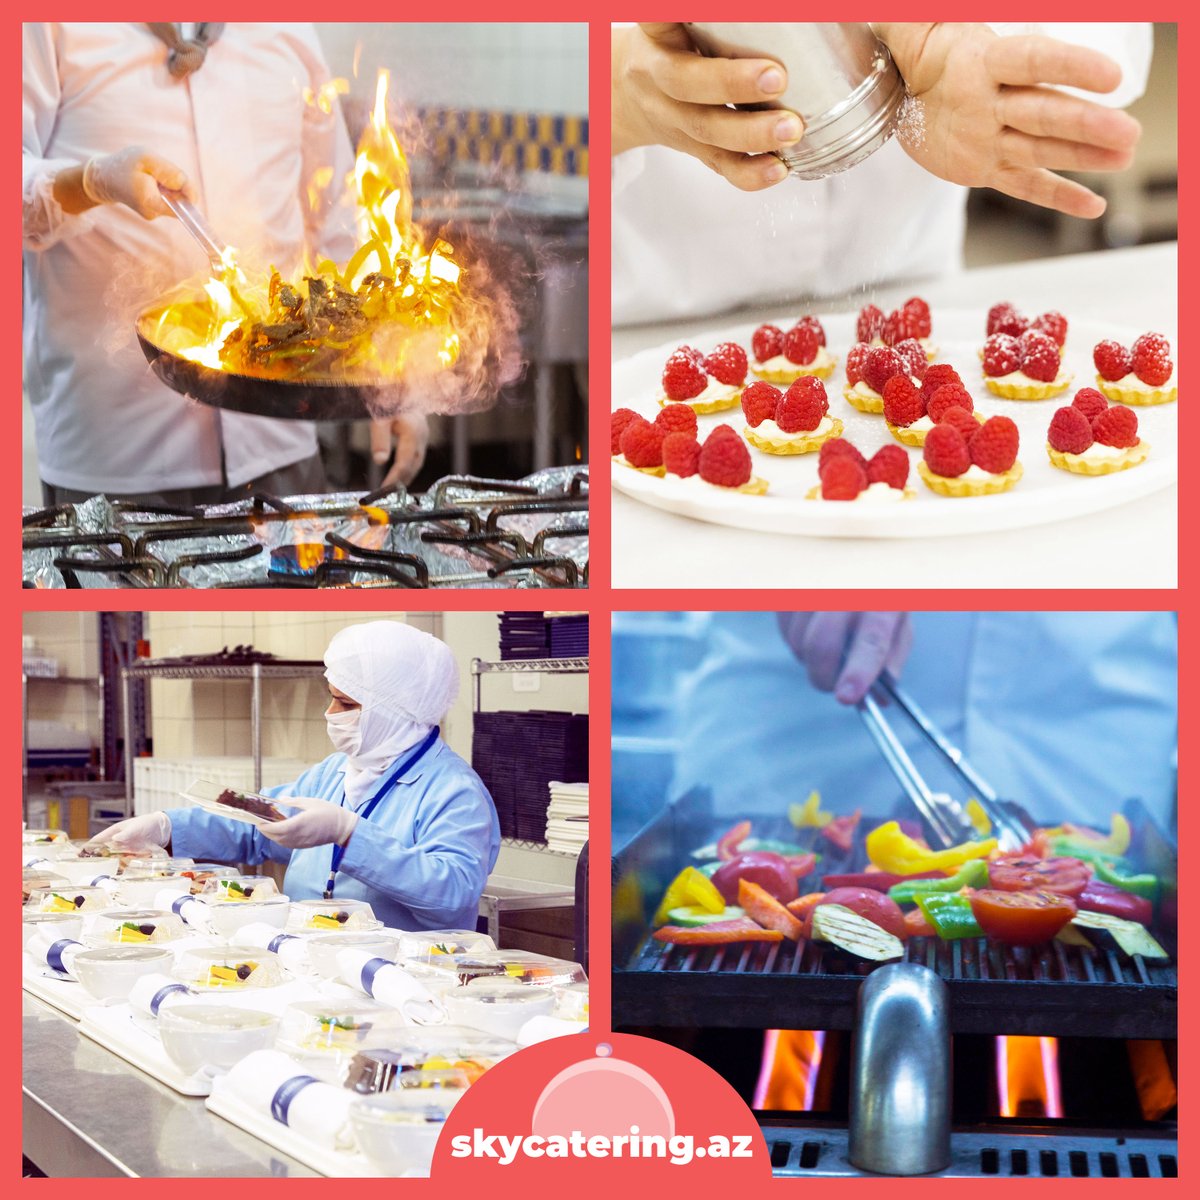 👩🏻‍🍳👨🏻‍🍳 Böyük yemək seximizin dörd bir tərəfində aşpazlarımız ləzzətli təamlar yaradırlar. 

👩🏻‍🍳👨🏻‍🍳 Our chefs create delicious meals all around our big cooking manufactory.

🌐 skycatering.az

#ASG #asgskycatering #asggroup #asgba #catering #azerbaijan #onboardmeal #culinary